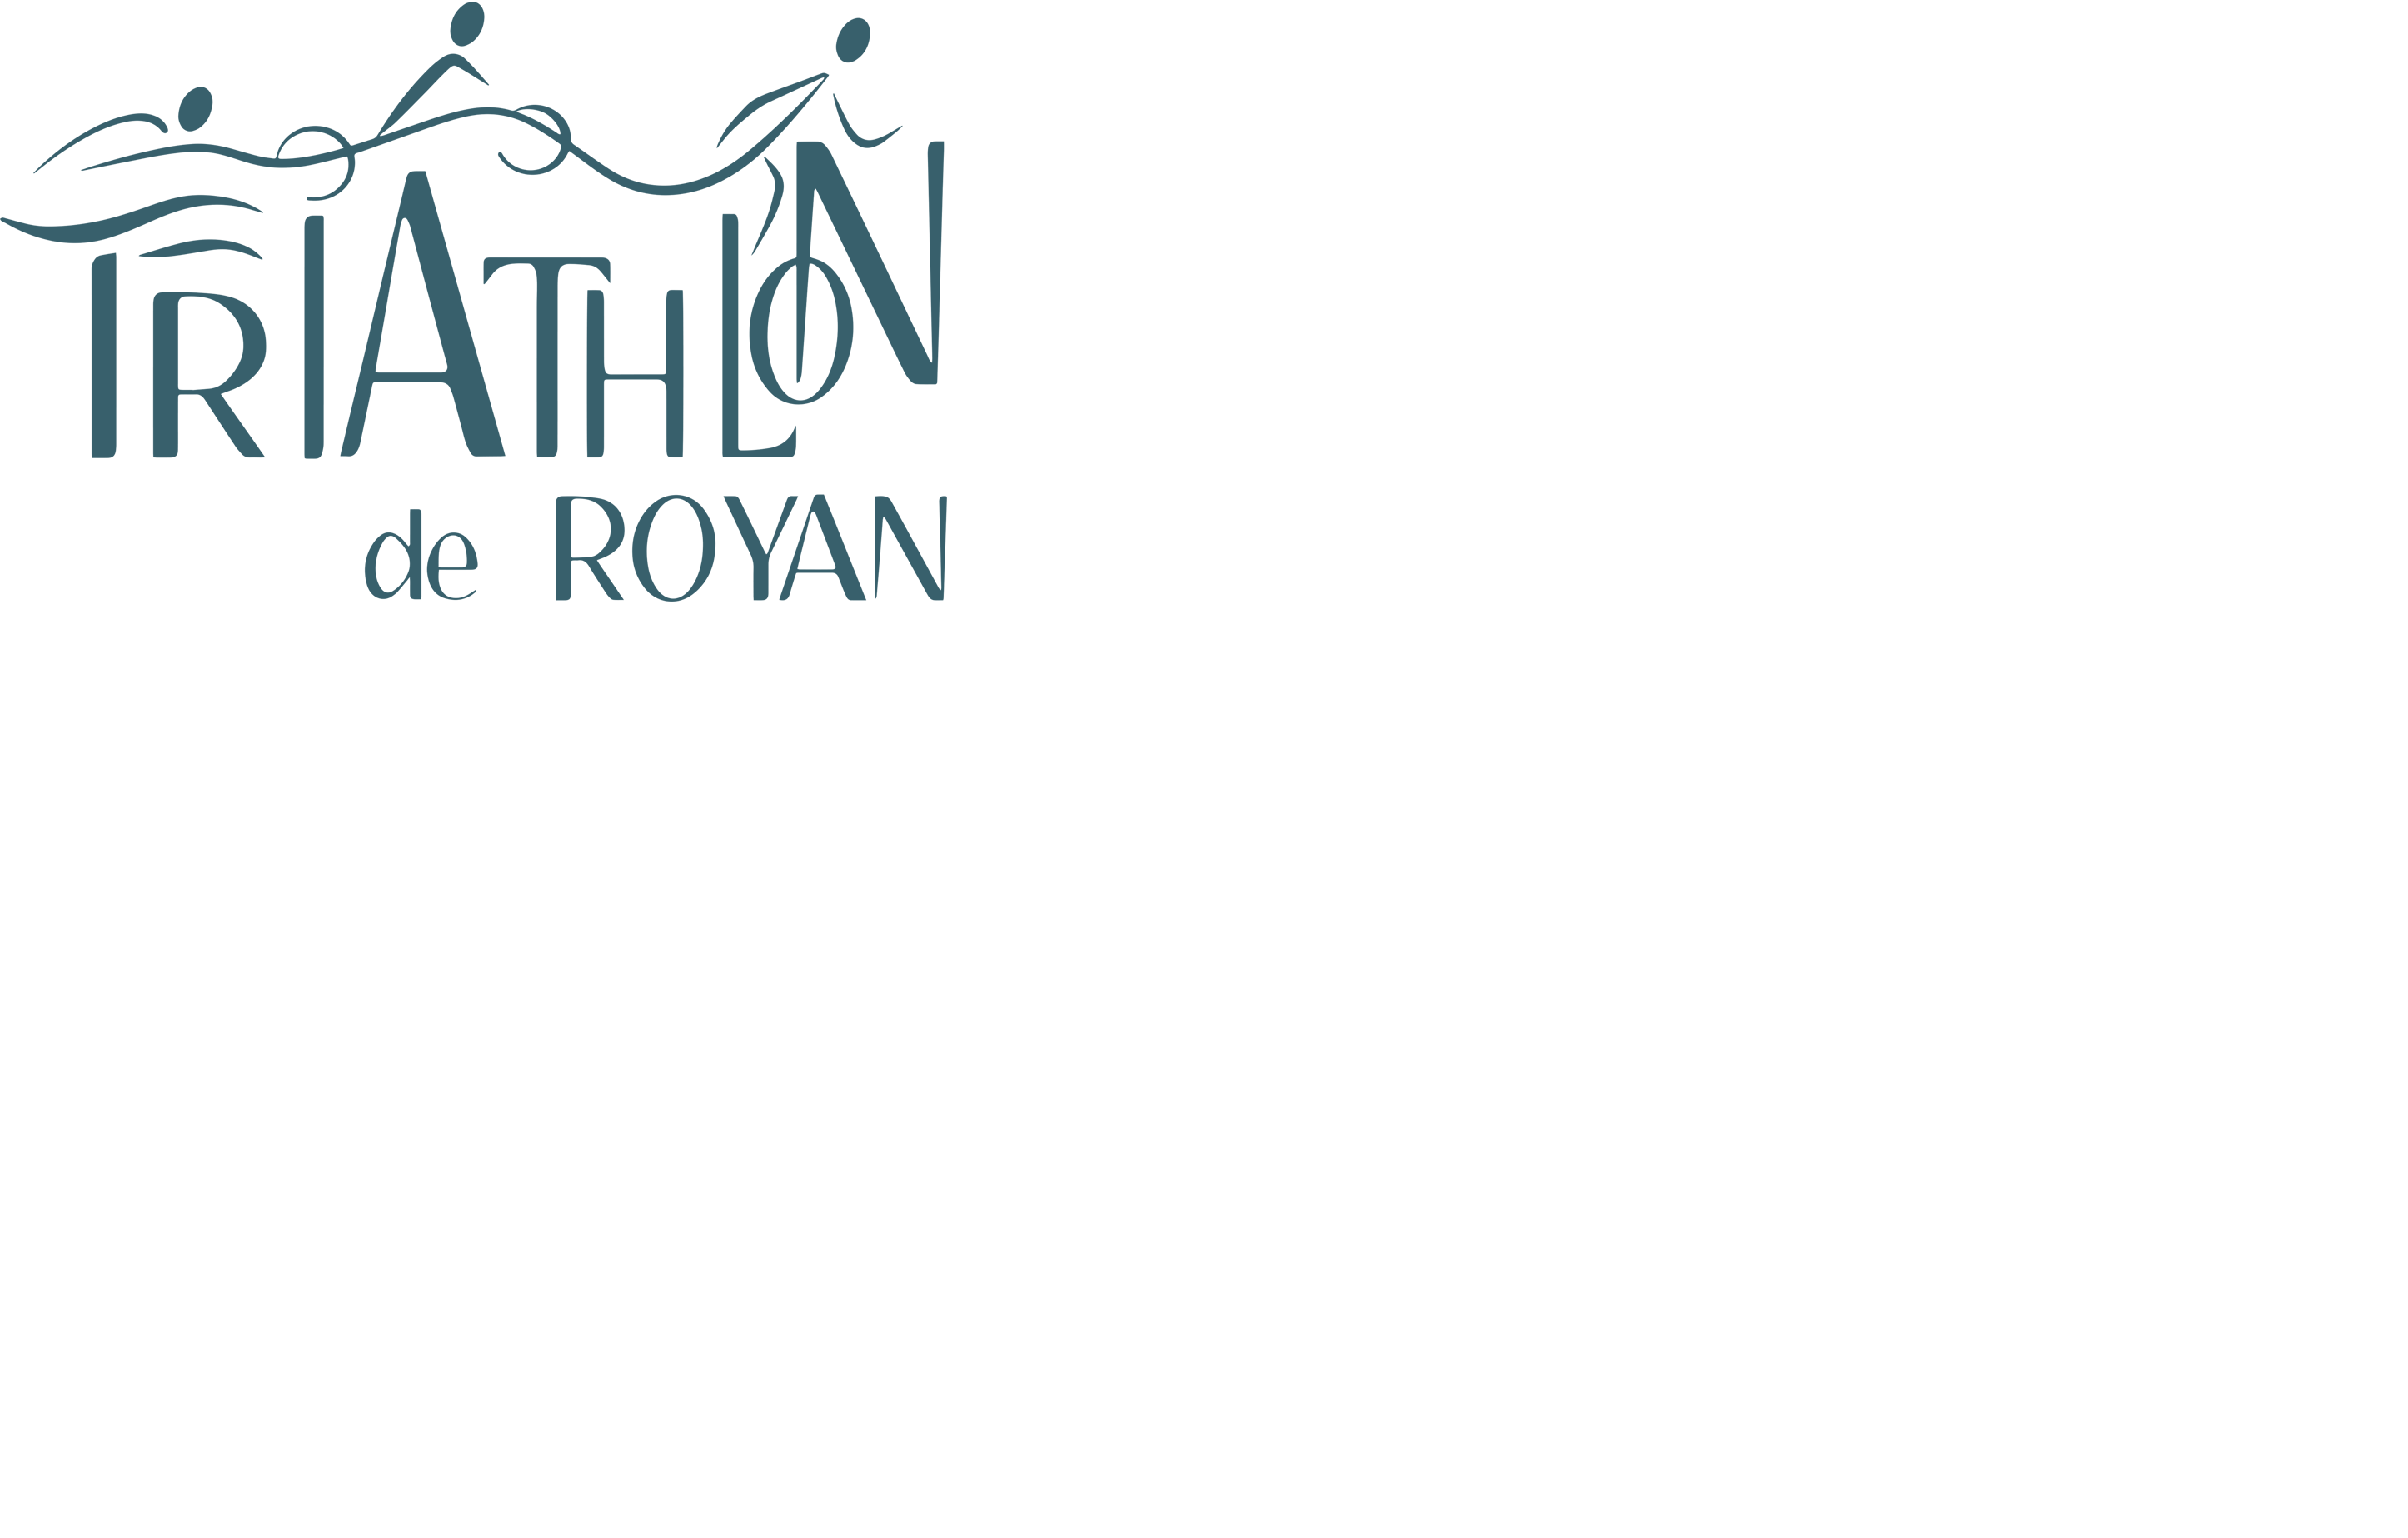 ROYAN : RAVITAILLEURS POUR LE TRIATHLON DE ROYAN du 21 SEPTEMBRE